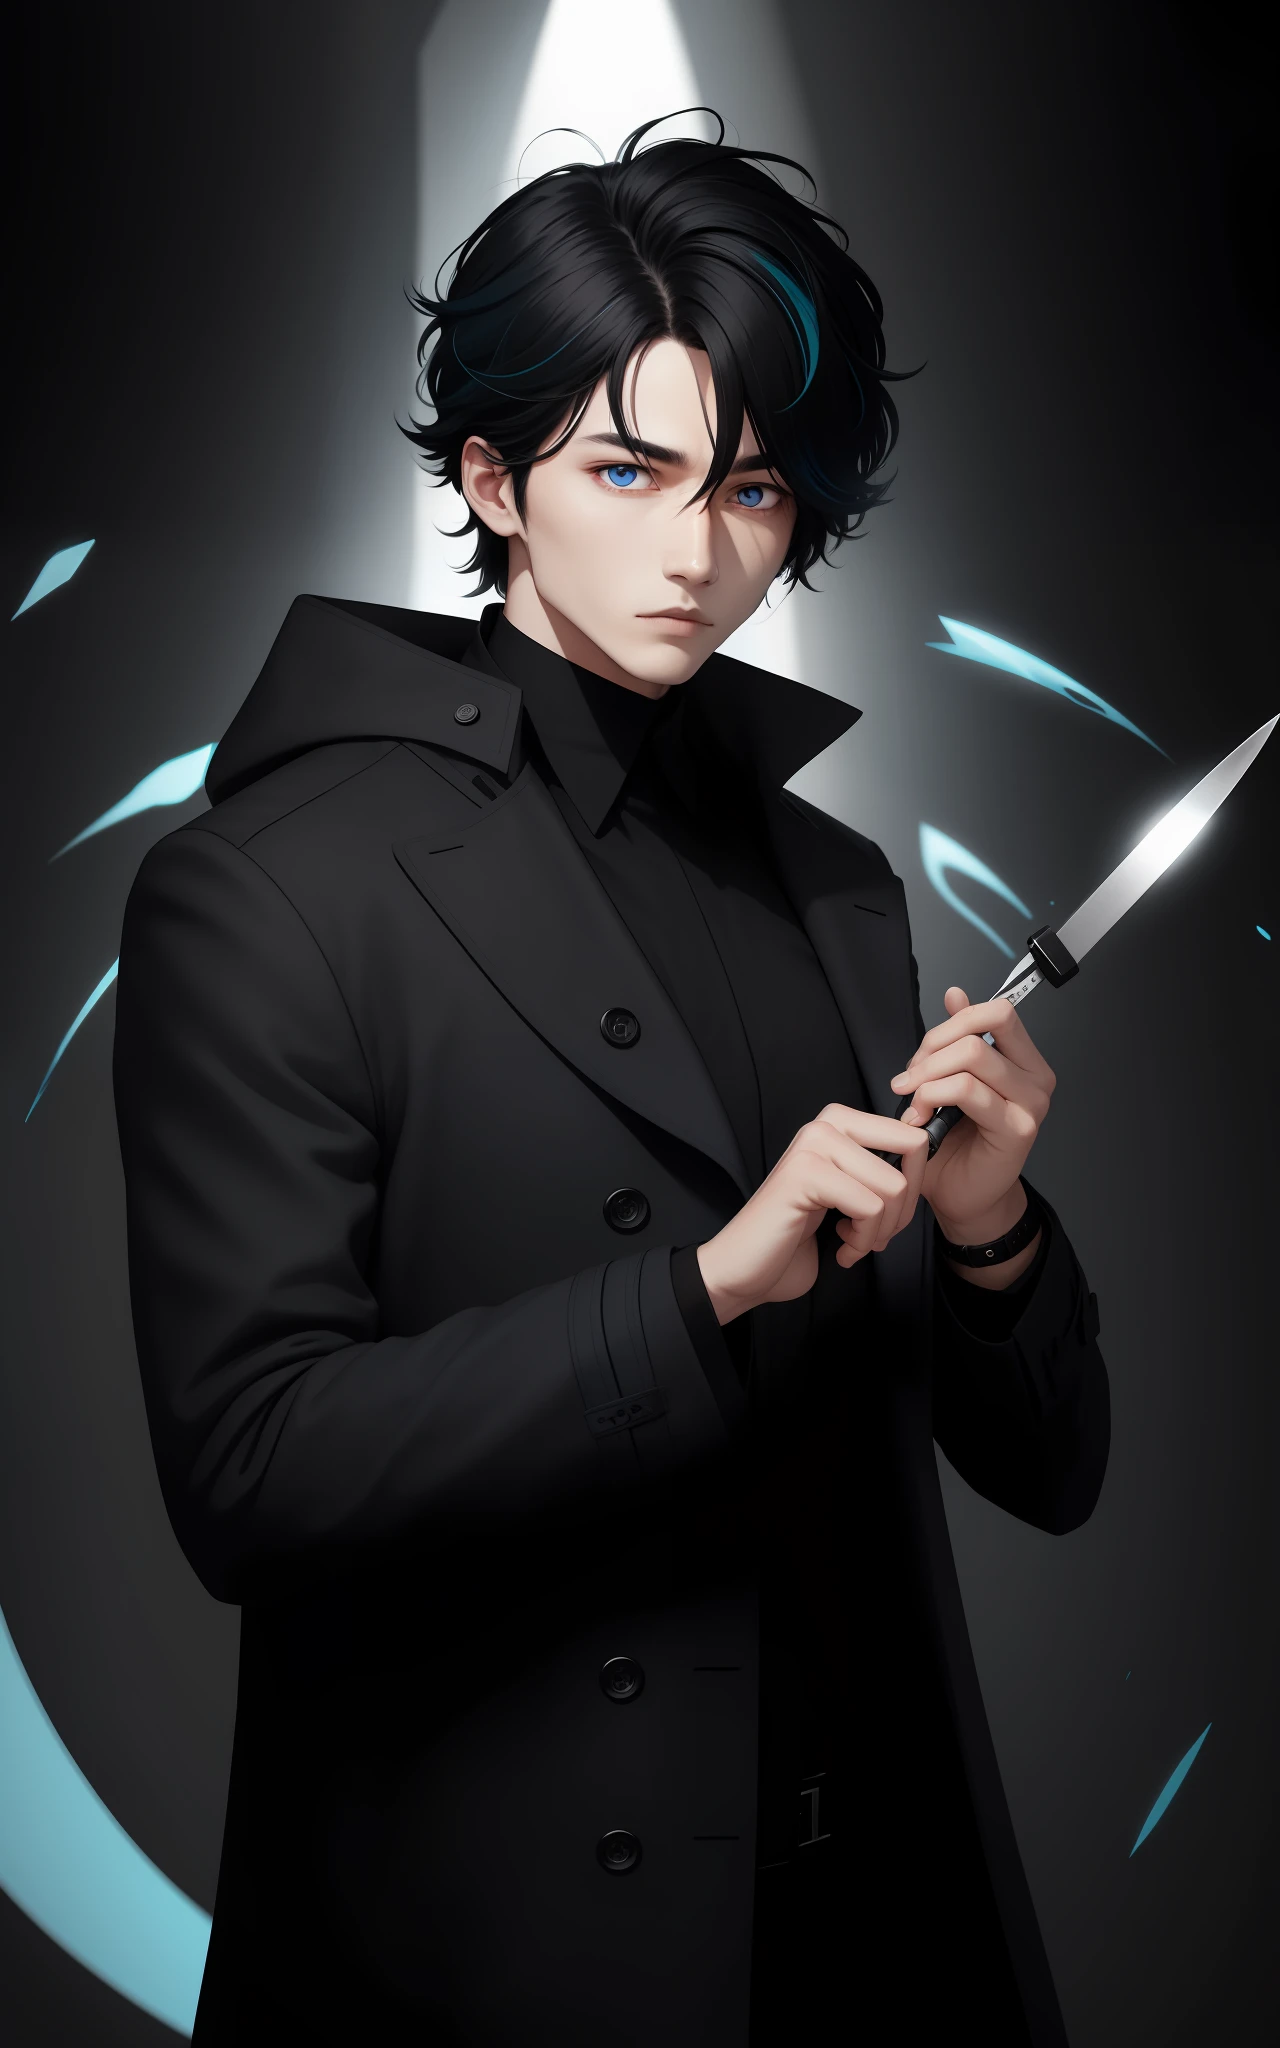 Mann trägt schwarzen Cacharrel, ein Skalpell halten, schwarzes Gesellschaftshaar mit weißen Locken, zweifarbige Augen, Kampf, blaue Aura rundherum, Mantel tragen